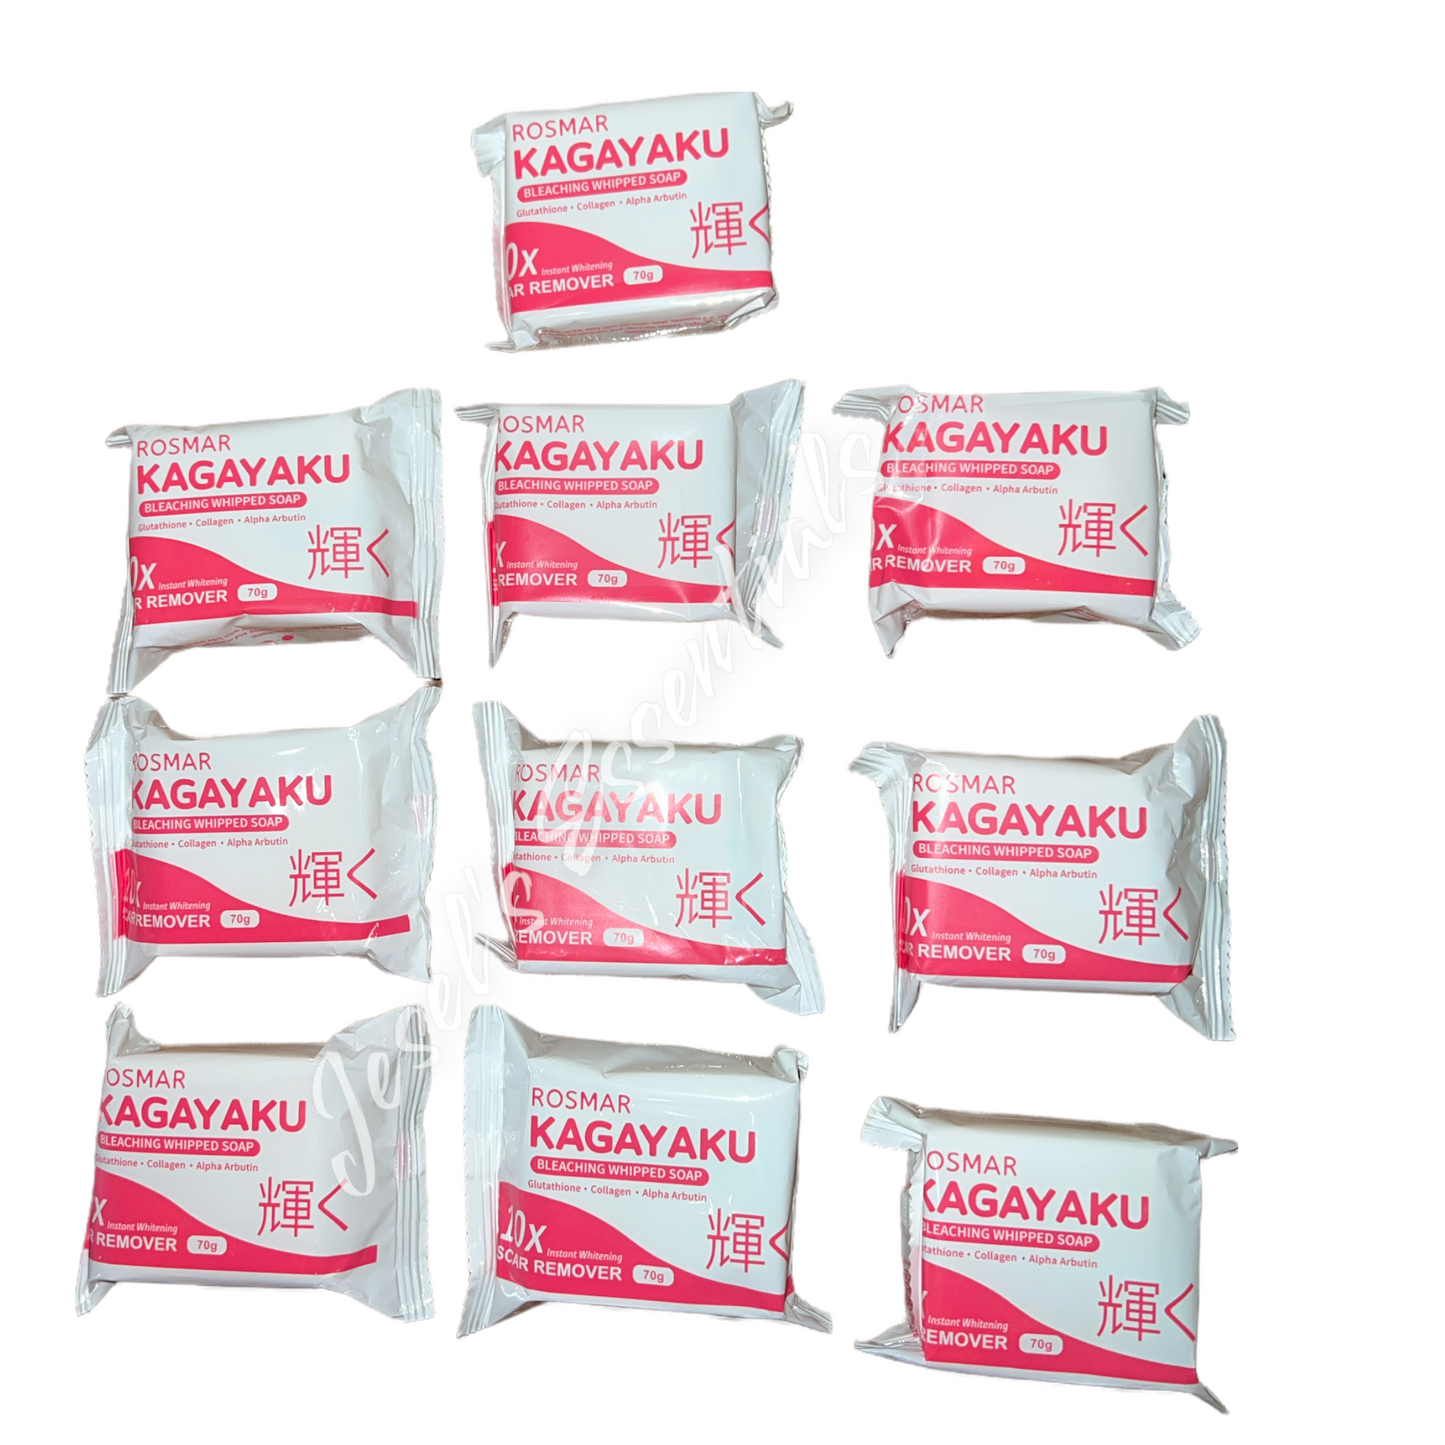 Rosmar Kagayaku Soap 70g /10 bars